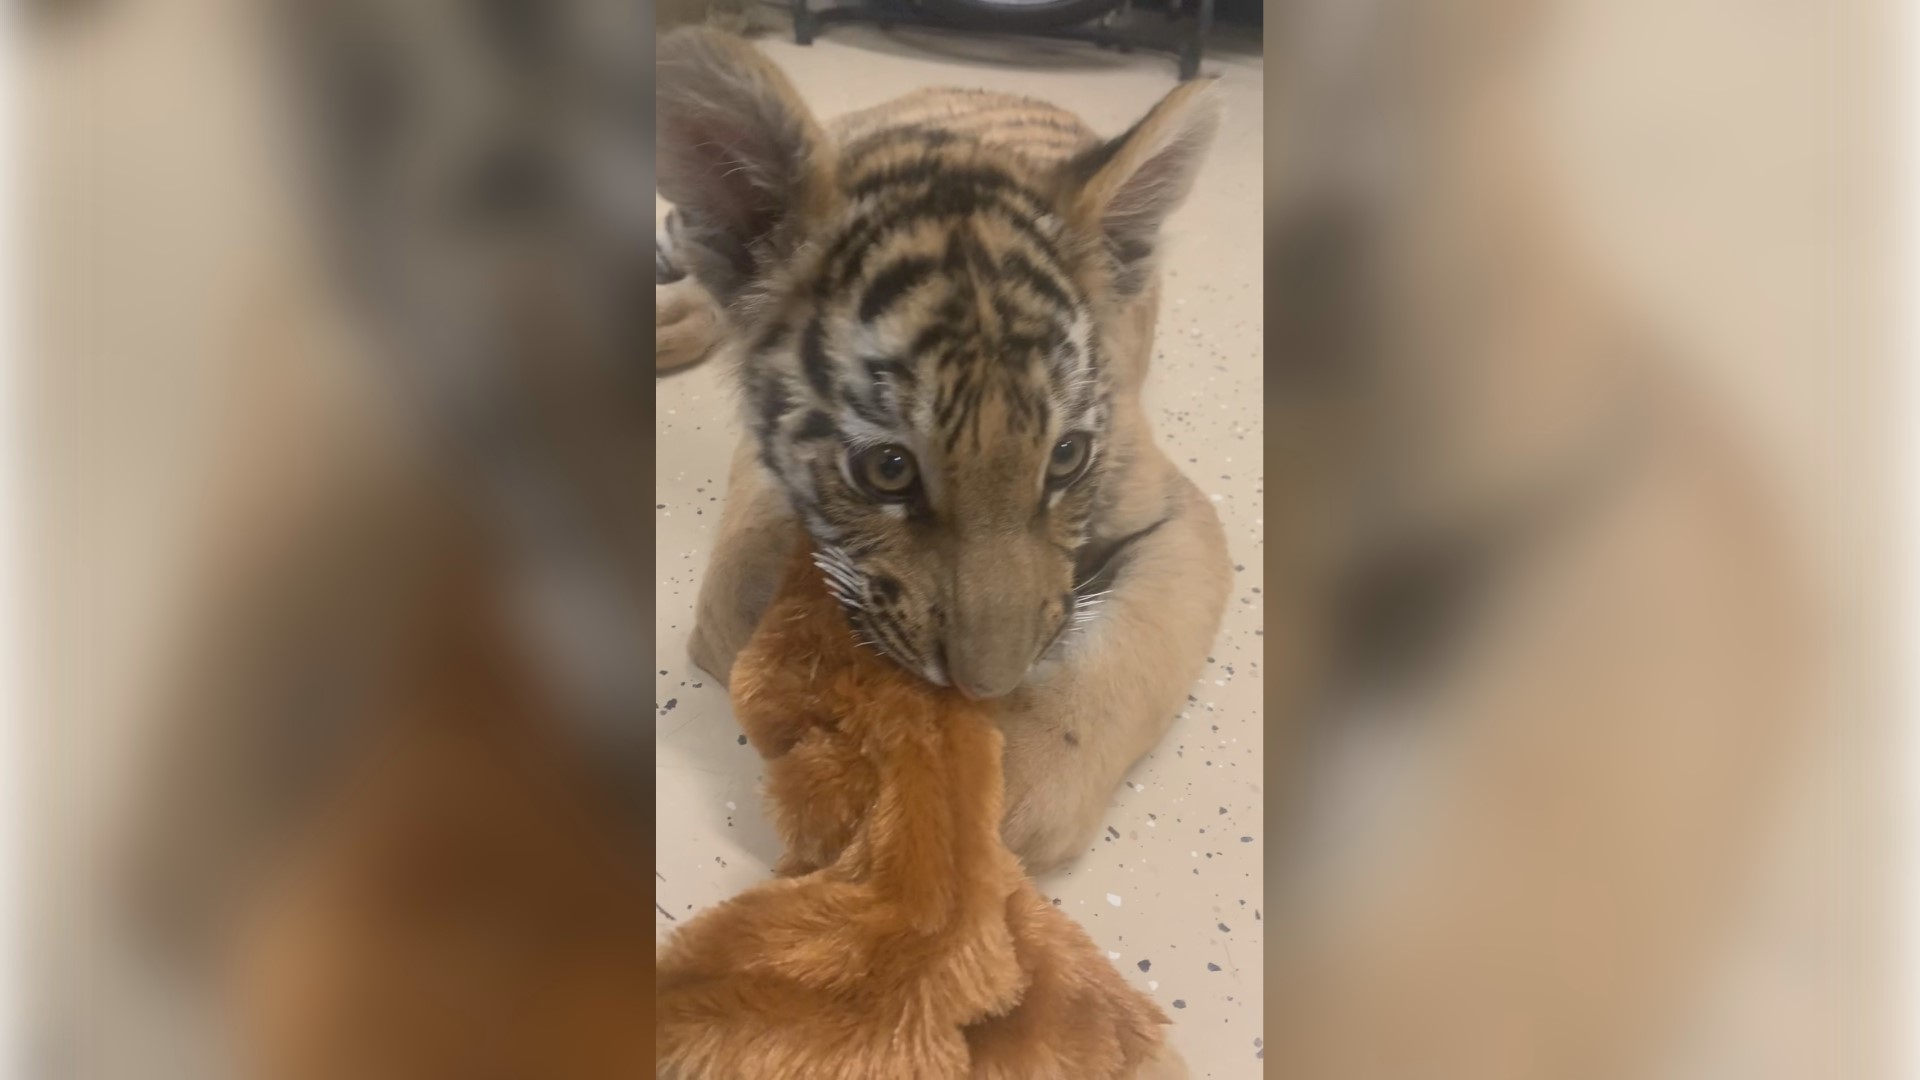 Pejabat Pusat Konservasi Satwa Liar Barat Daya mengatakan anak harimau itu sekarang tinggal di kandang khusus di Scottsdale, tempat dia mendapatkan perawatan yang dibutuhkannya.